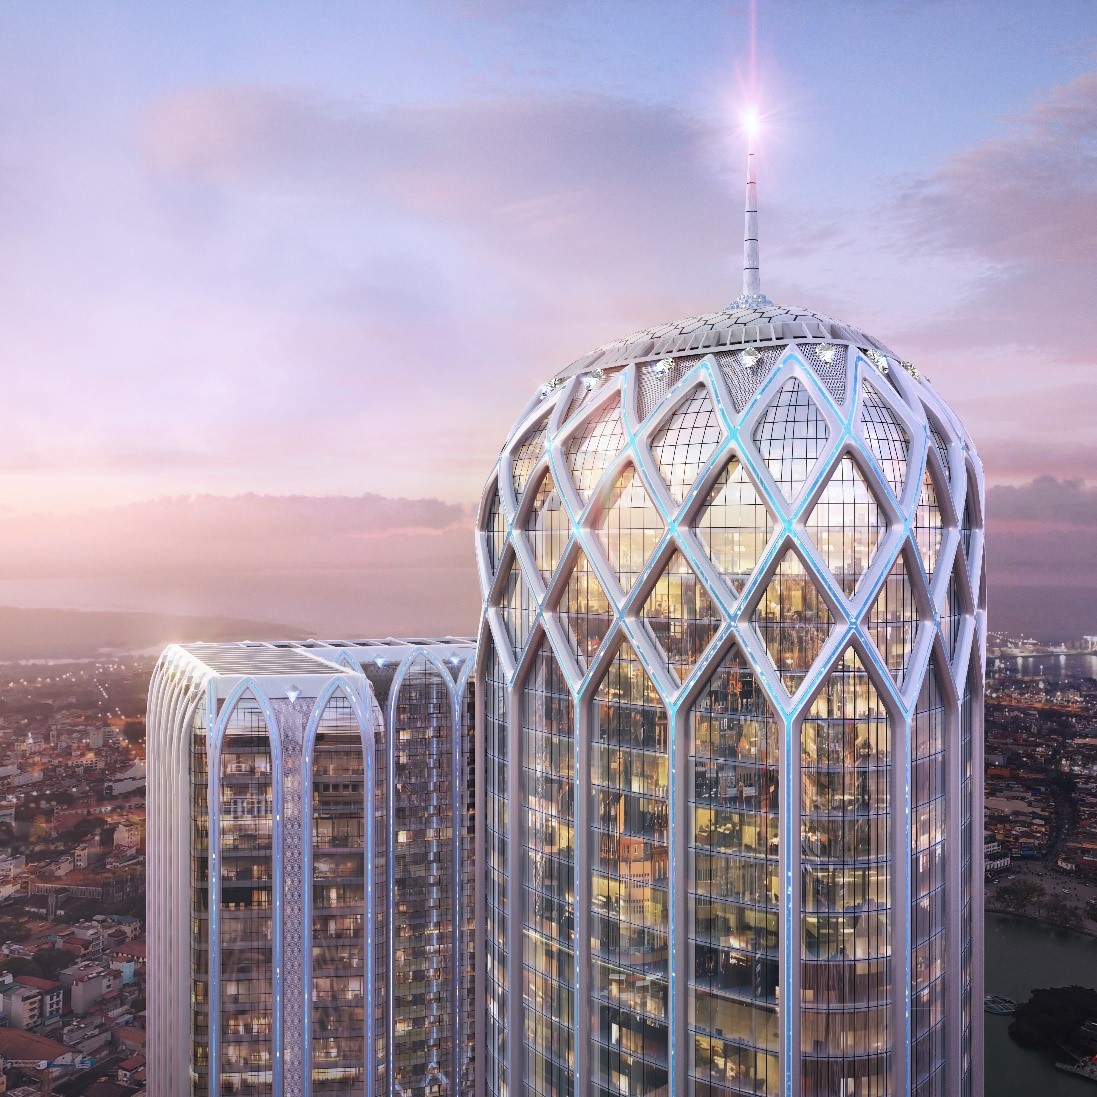 Tòa tháp Khách sạn Diamond Crown Hai Phong đẳng cấp 5 sao quốc tế với chiều cao kỷ lục 186m hứa hẹn trở thành biểu tượng kiến trúc và phong cách sống mới của TP. Hải Phòng. Ảnh: HB.